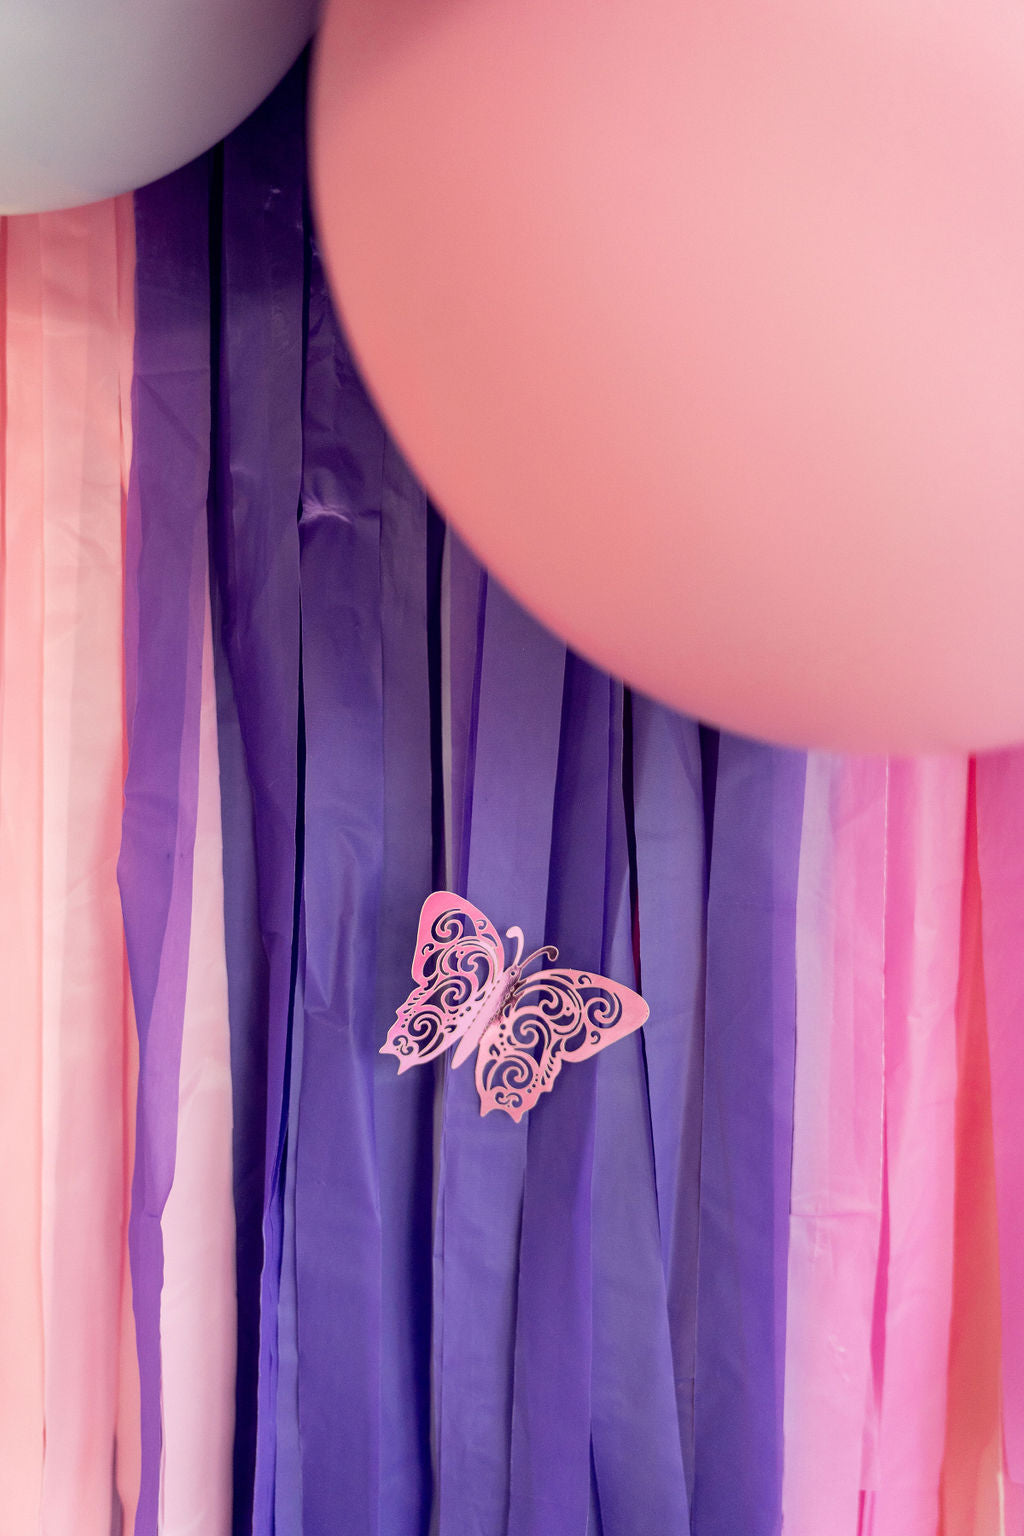 Butterfly Fringe Backdrop